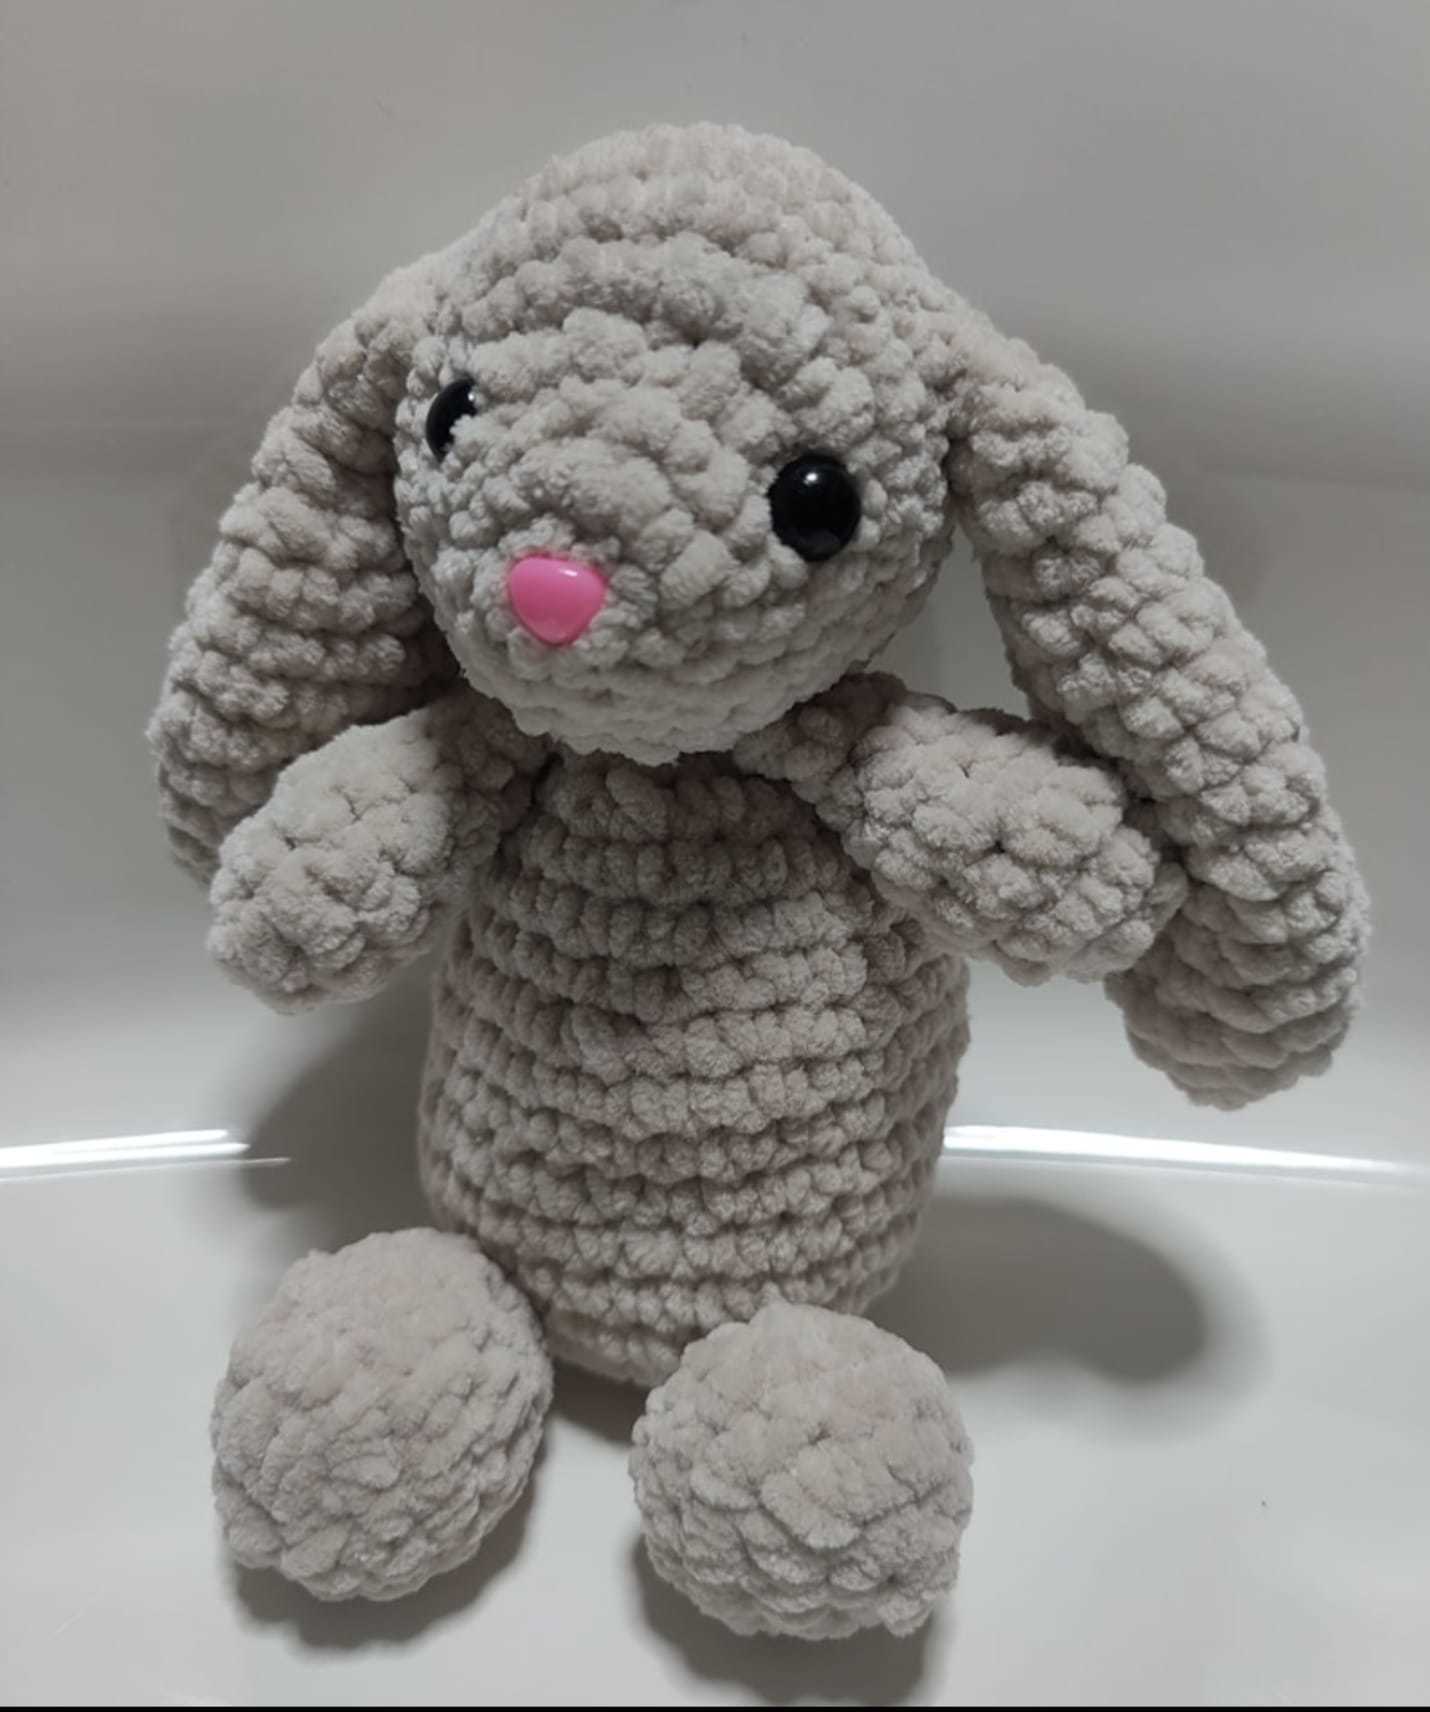 A crochet bunny